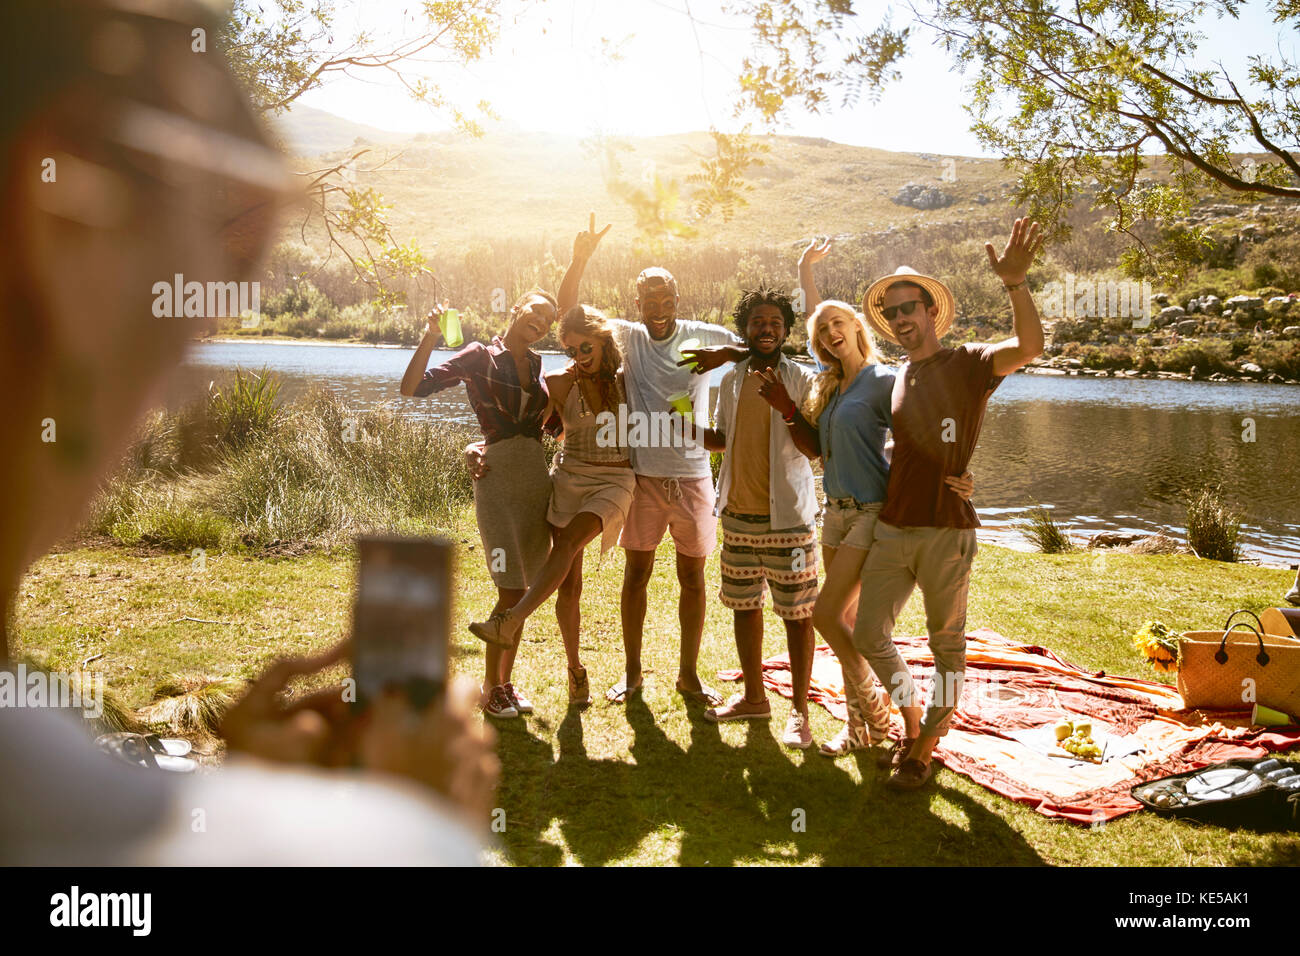 Jeune femme avec appareil photo téléphone photographier des amis au soleil de l'été pique-nique au bord de la rivière Banque D'Images